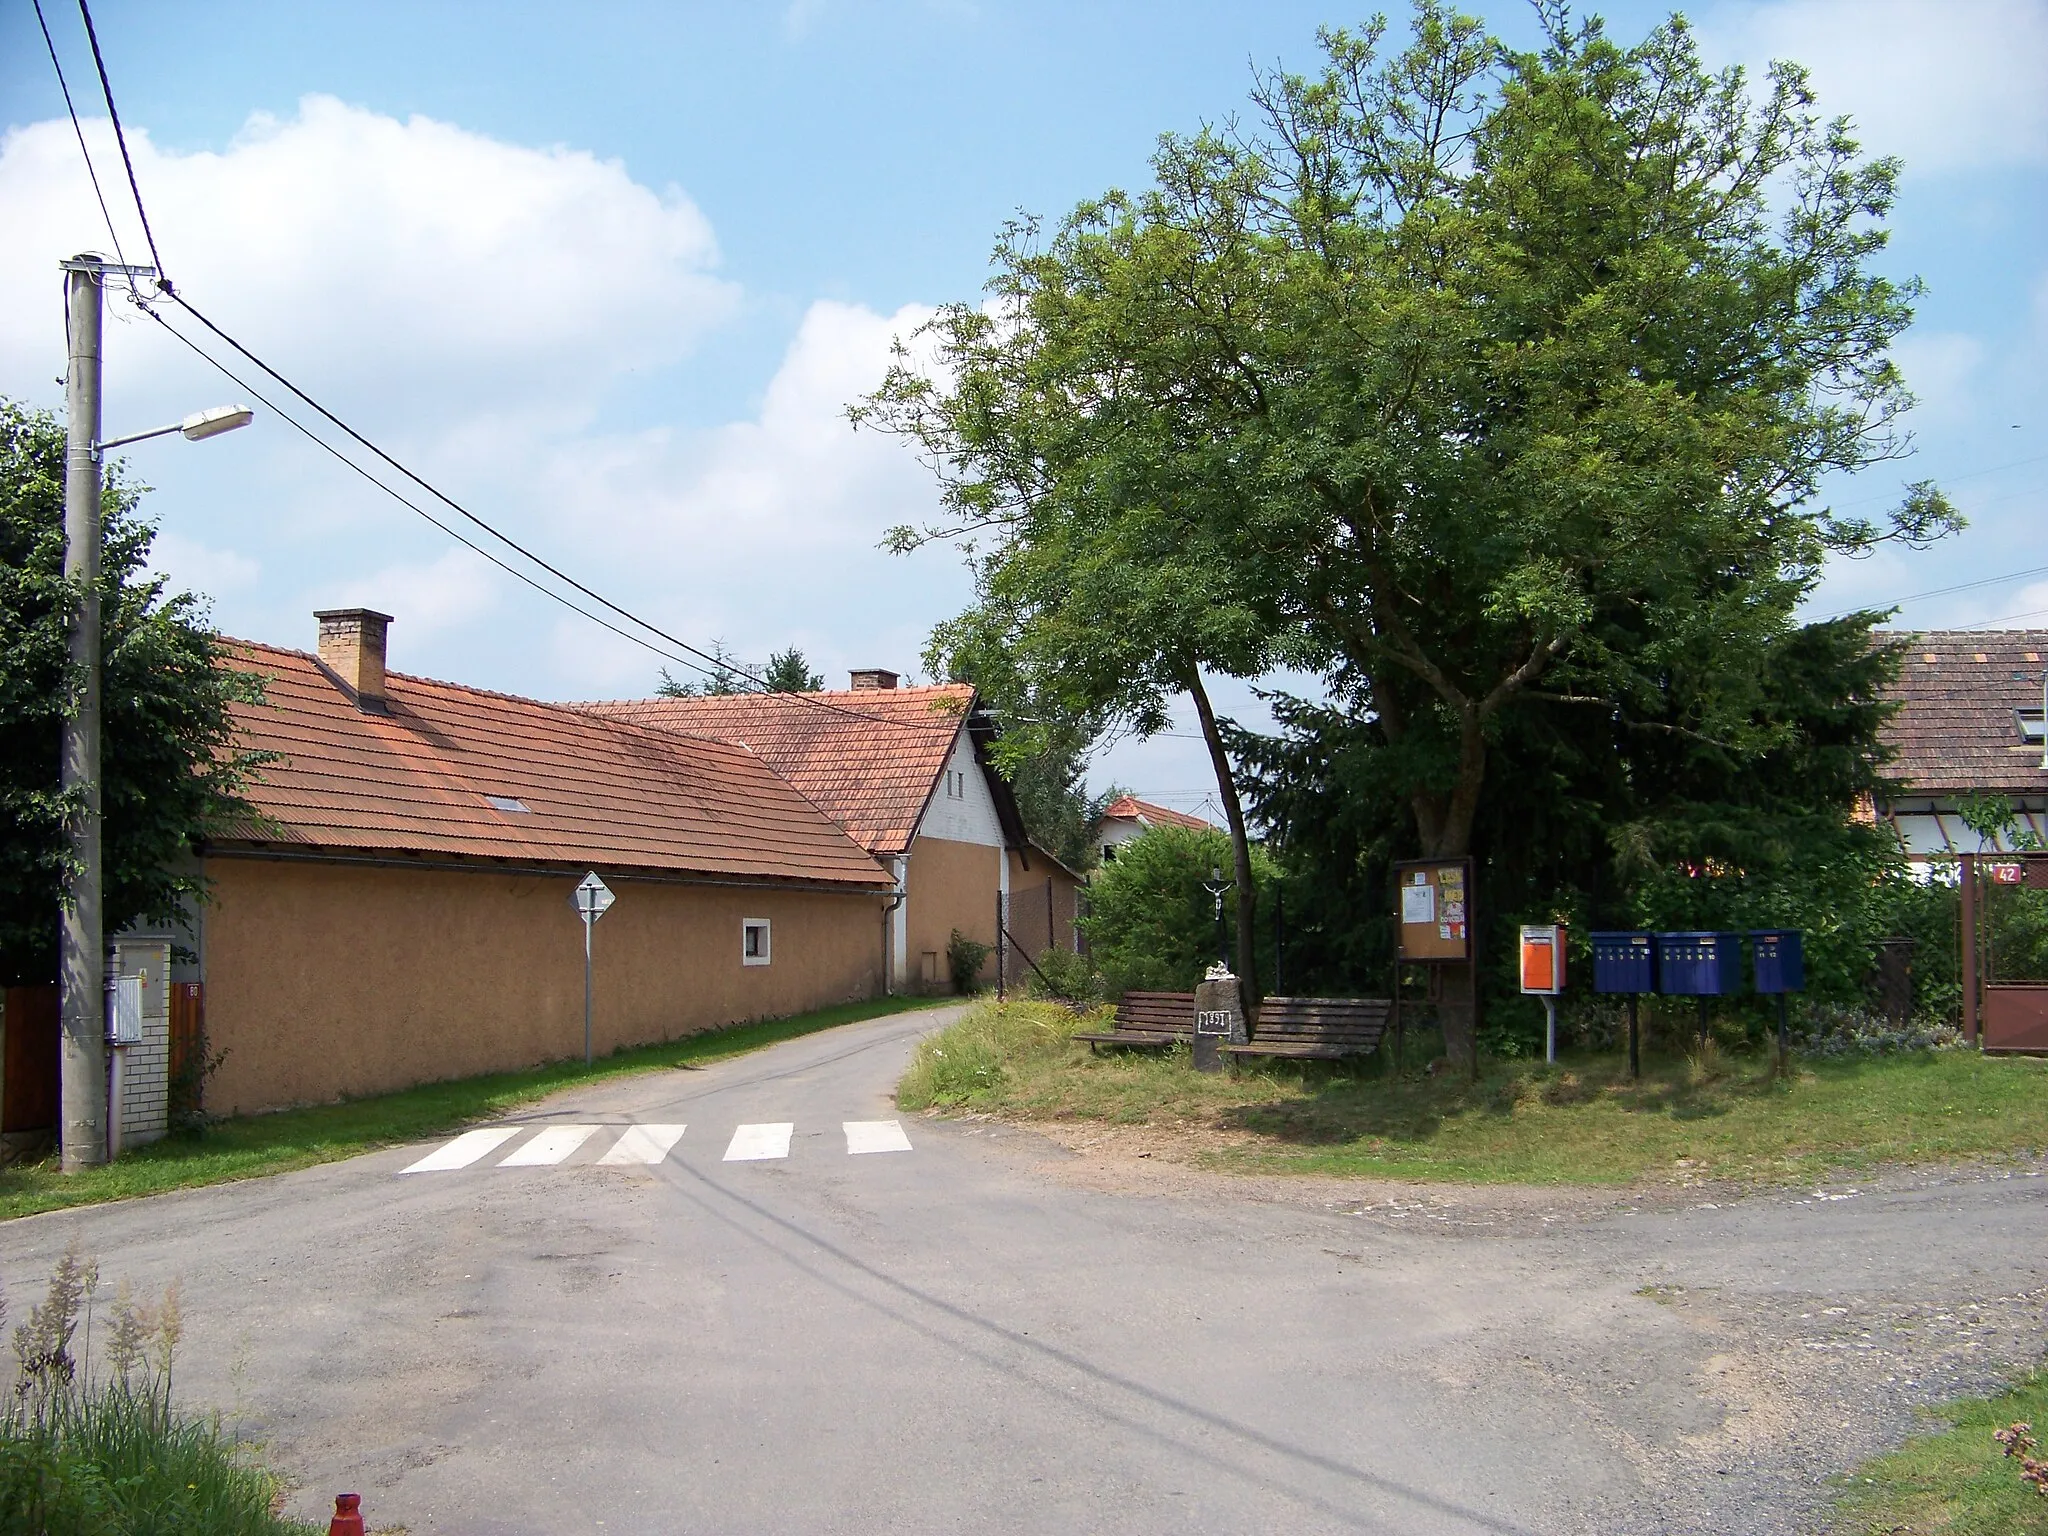 Photo showing: Smolotely-Dalskabáty, Příbram District, Central Bohemian Region, the Czech Republic.